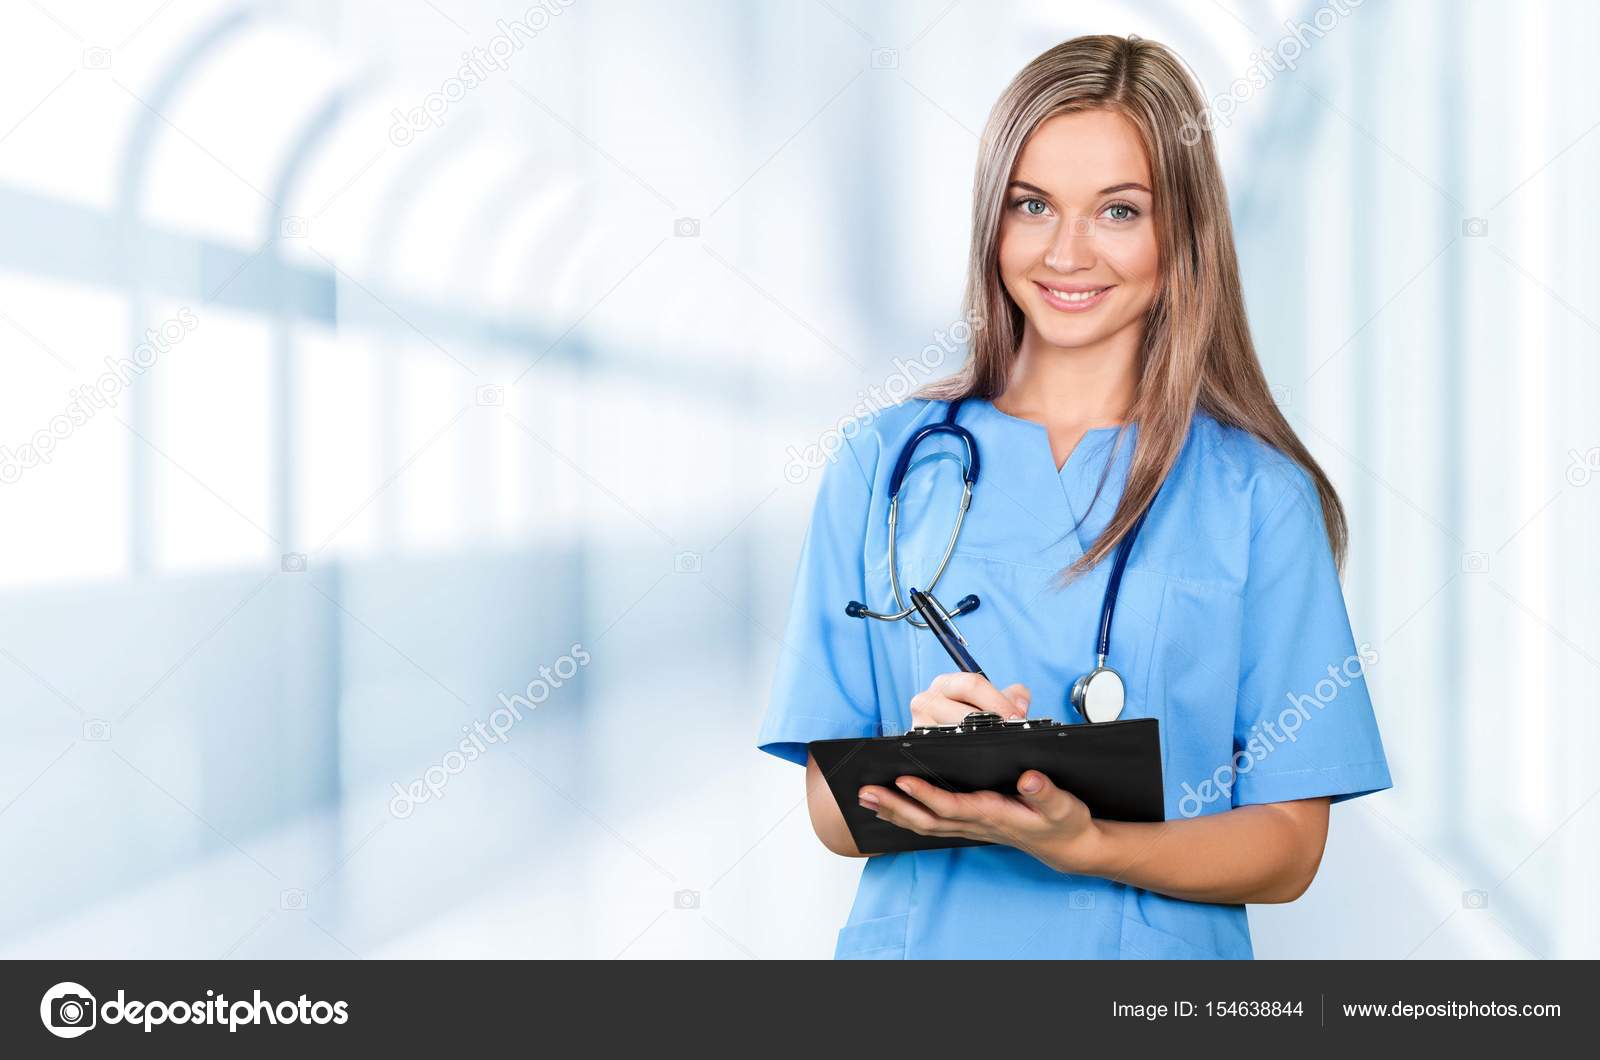 Про жен врачей. Женщина врач. Девушка врач. Девушка врач улыбается. Врач в синем халате.